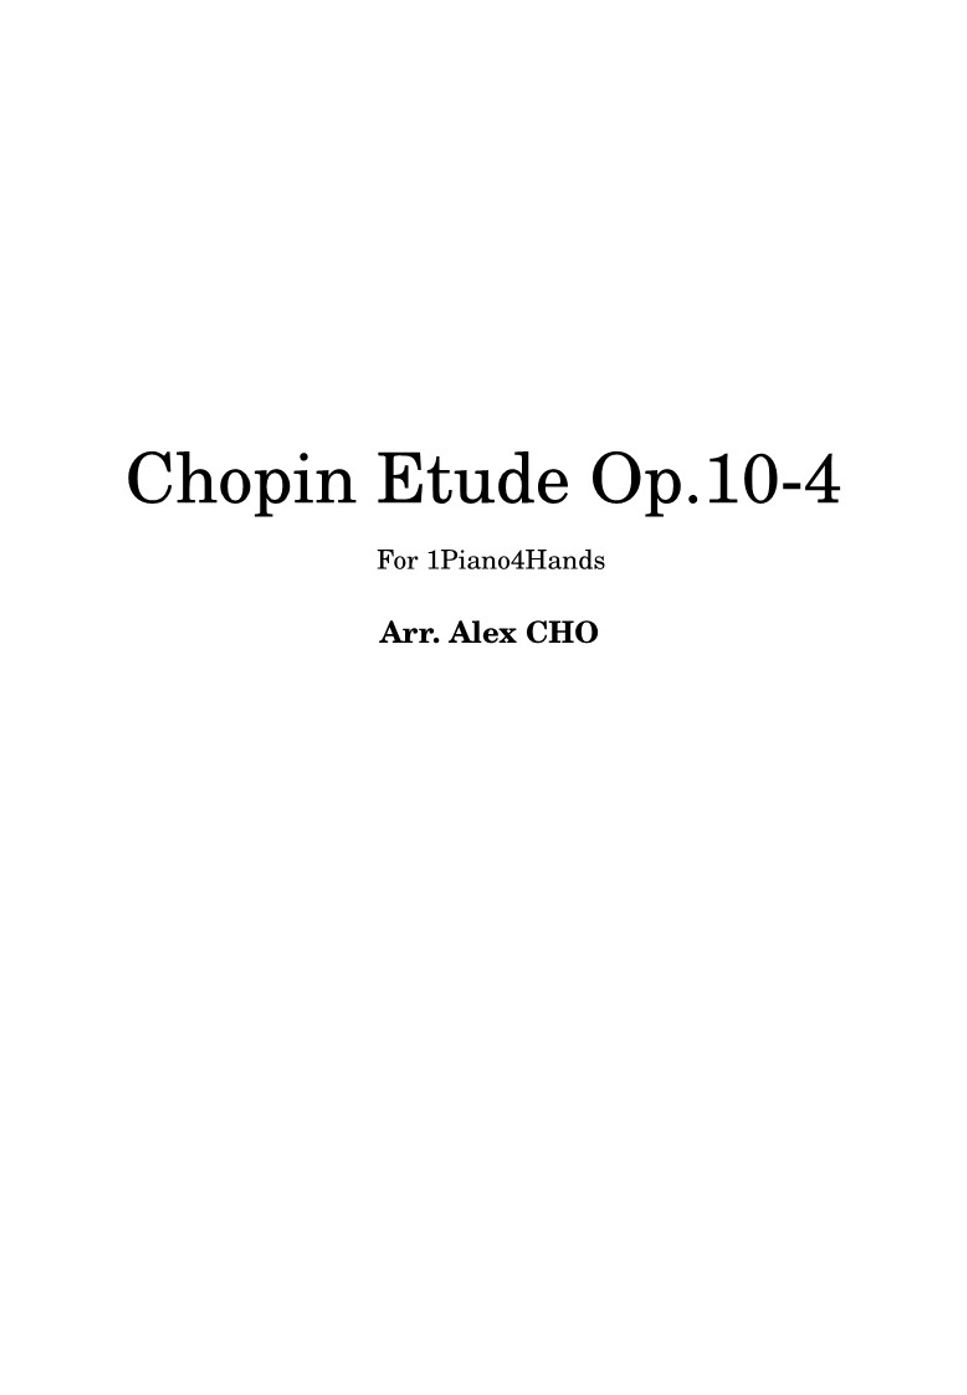 Chopin - Chopin Etude Op.10-4 for 1piano4hands (피아노 연탄곡) by Alex Cho